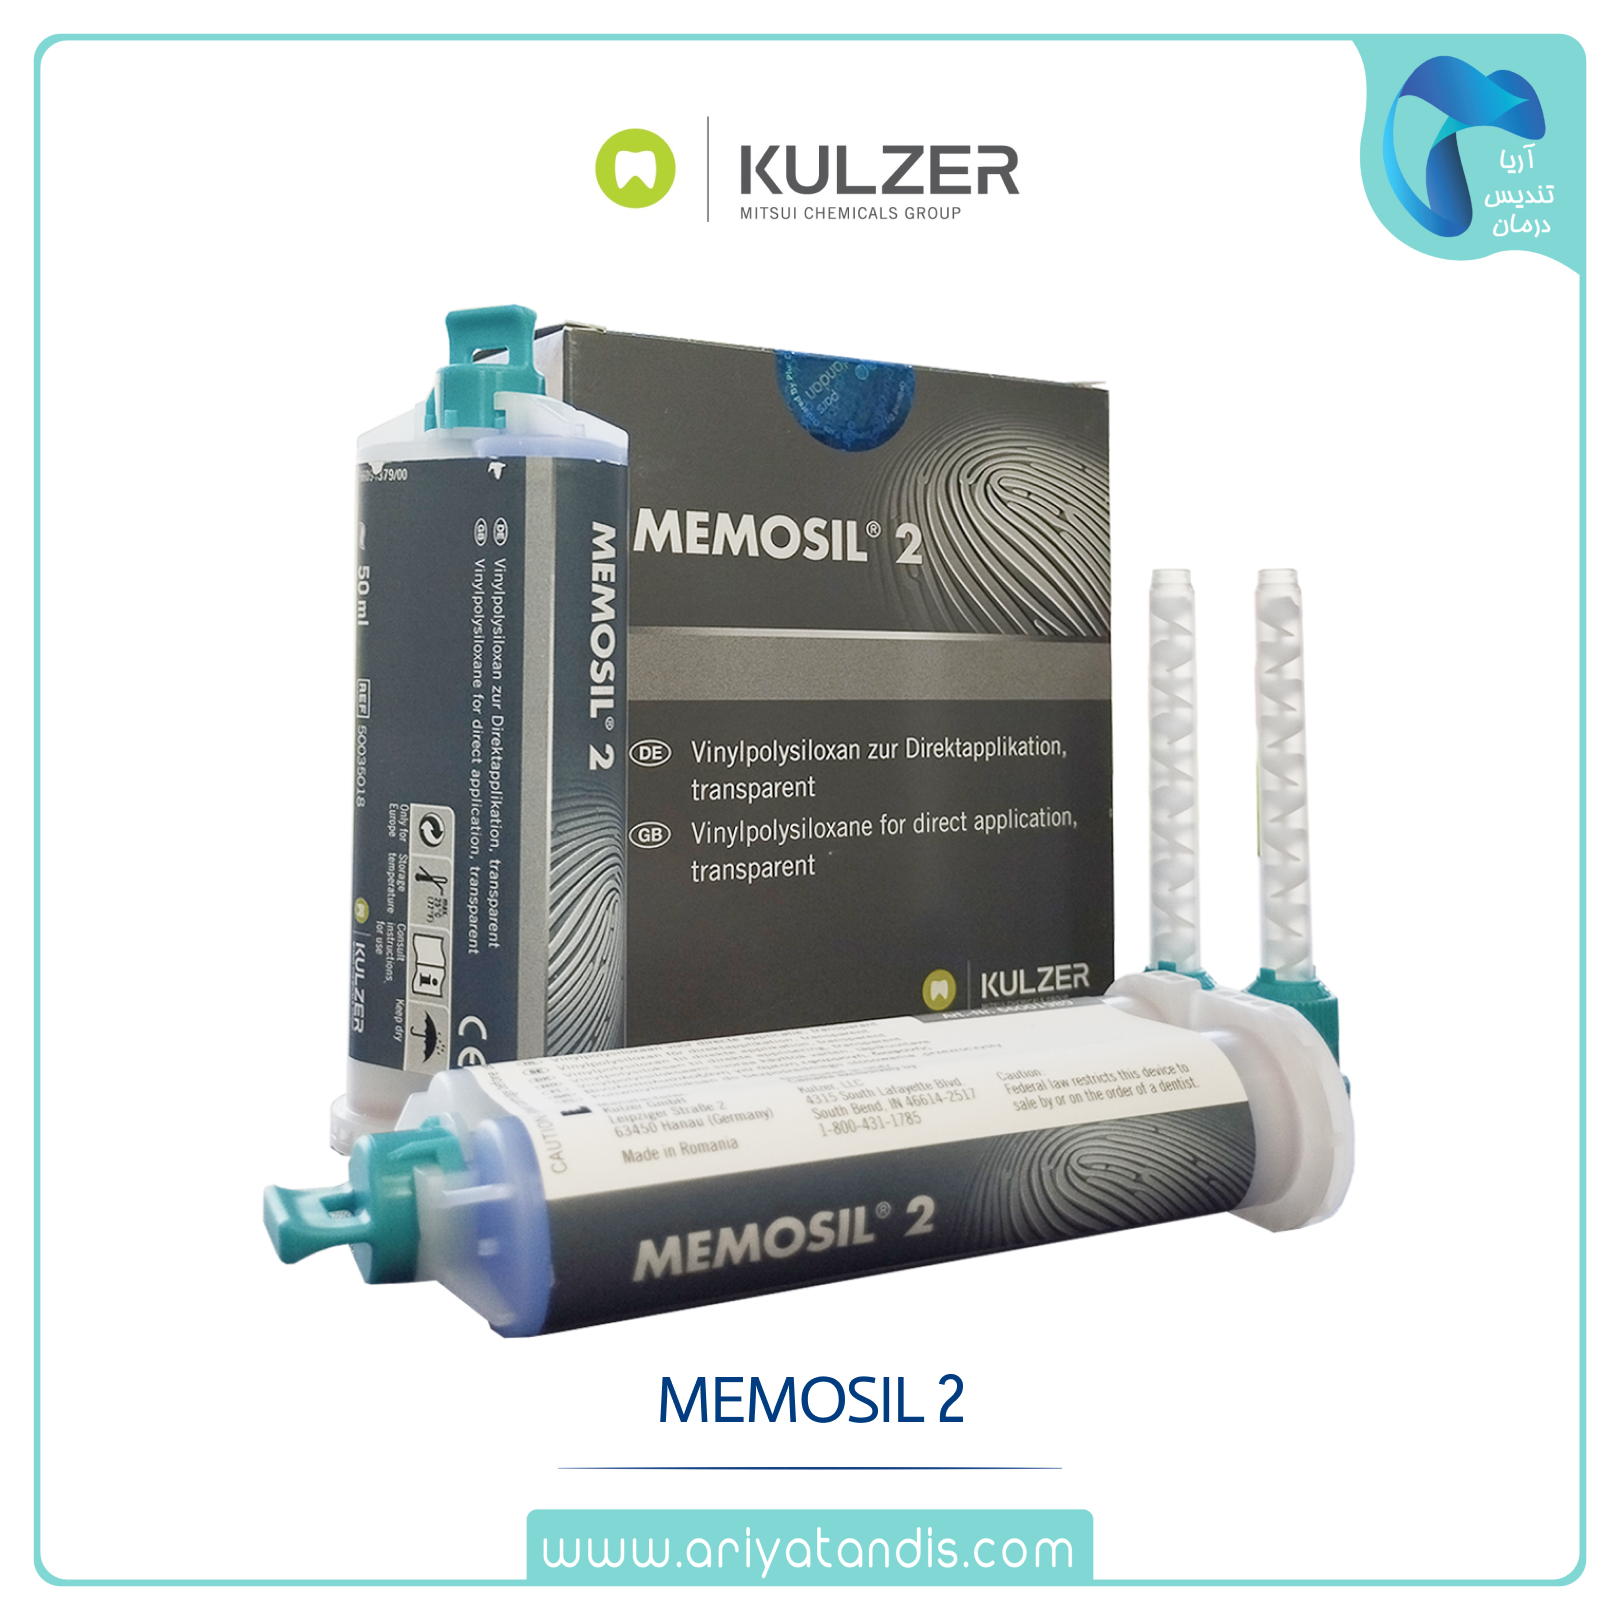 ماده قالبگیری شفاف کولزر Memosil 2 KULZER